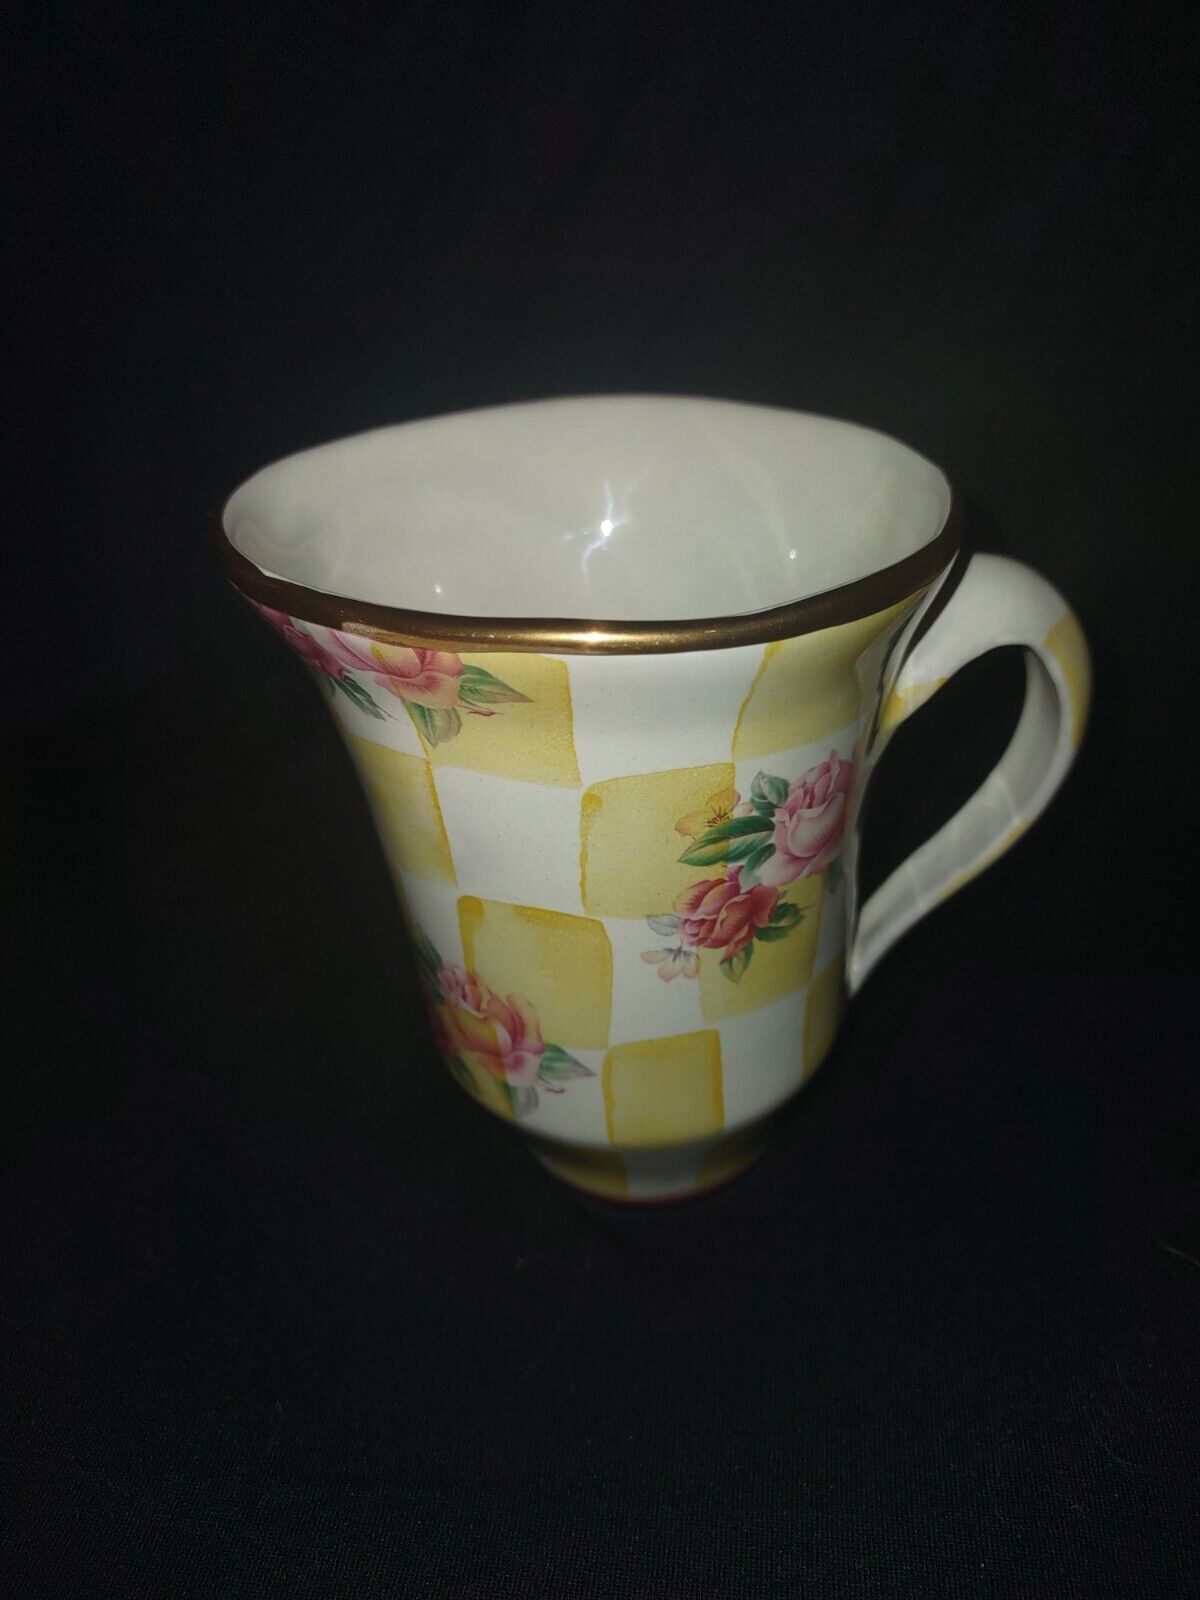 Mackenzie Childs Honeymoon Lemon Curd coffee mug - retired, great condition